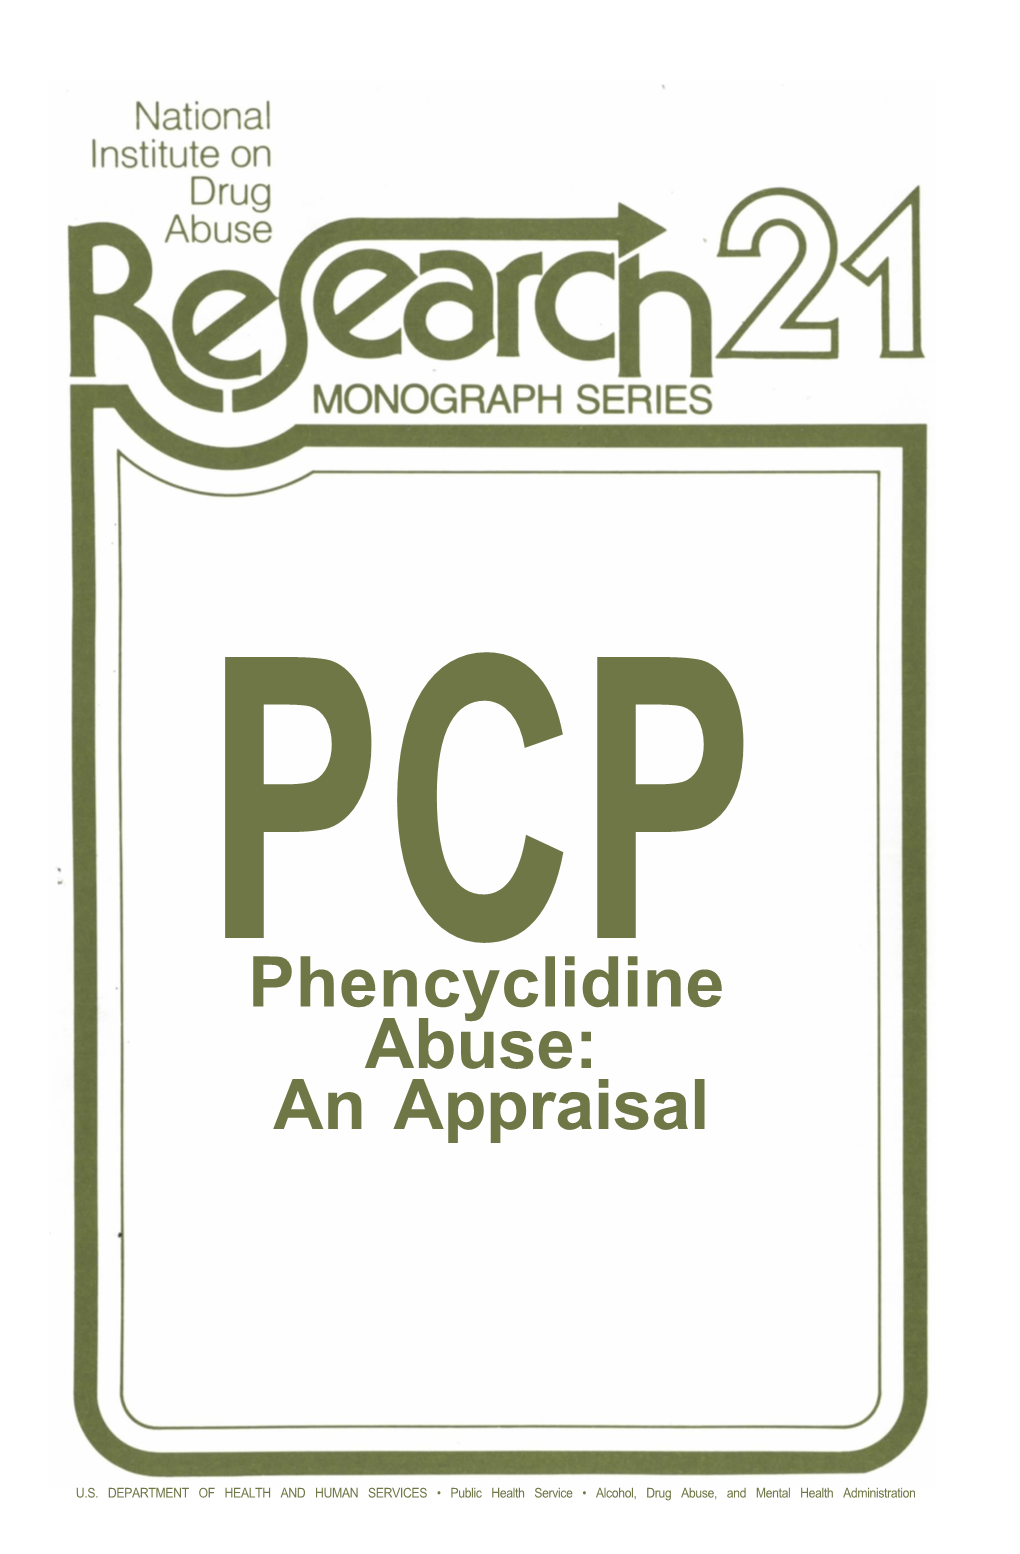 Phencyclidine (PCP) Abuse: an Appraisal